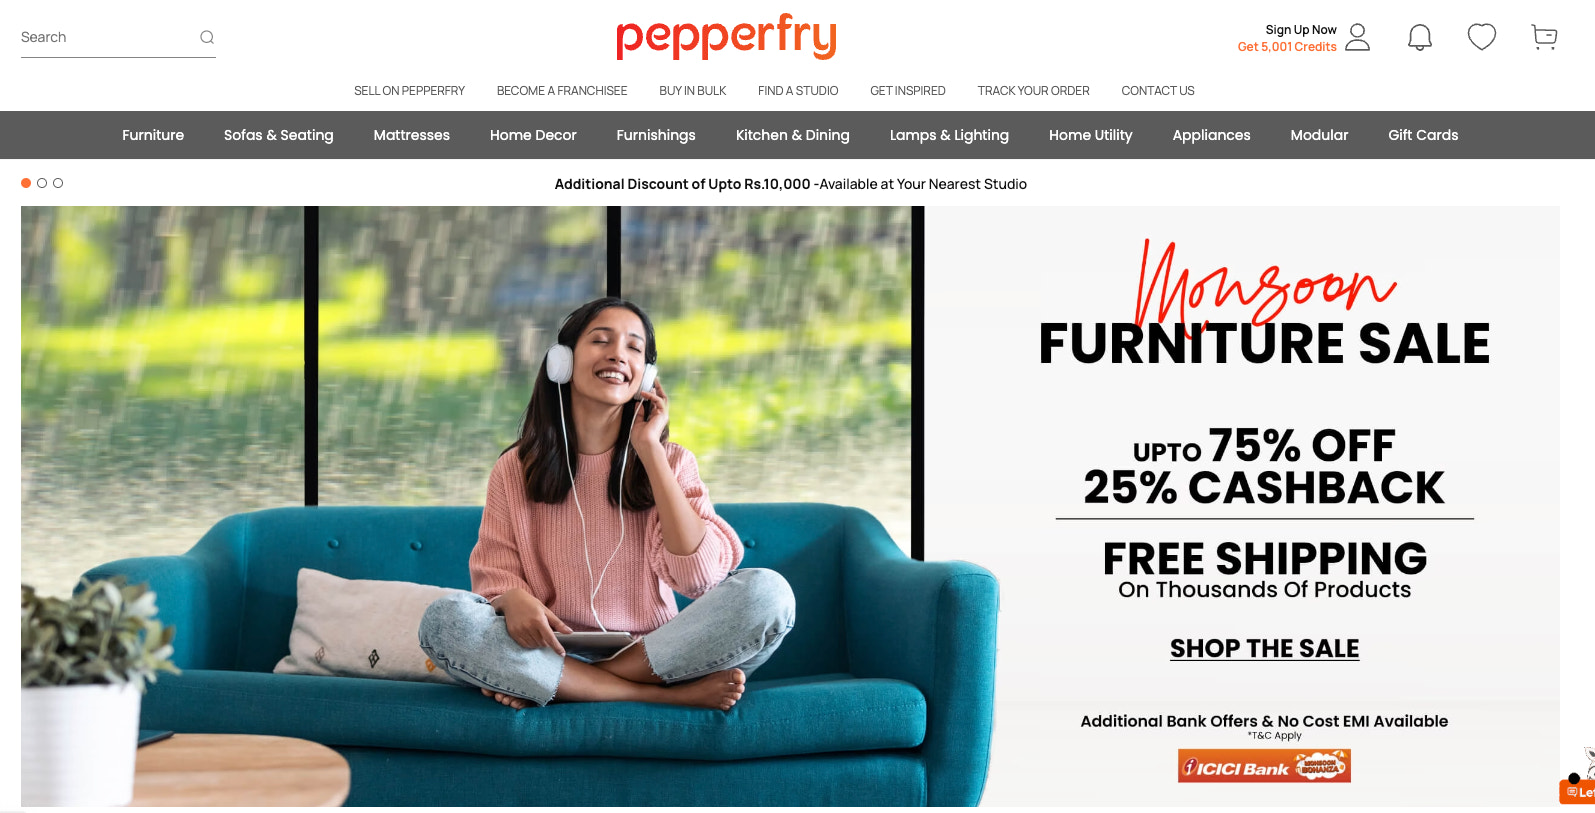 Pepperfry homepage